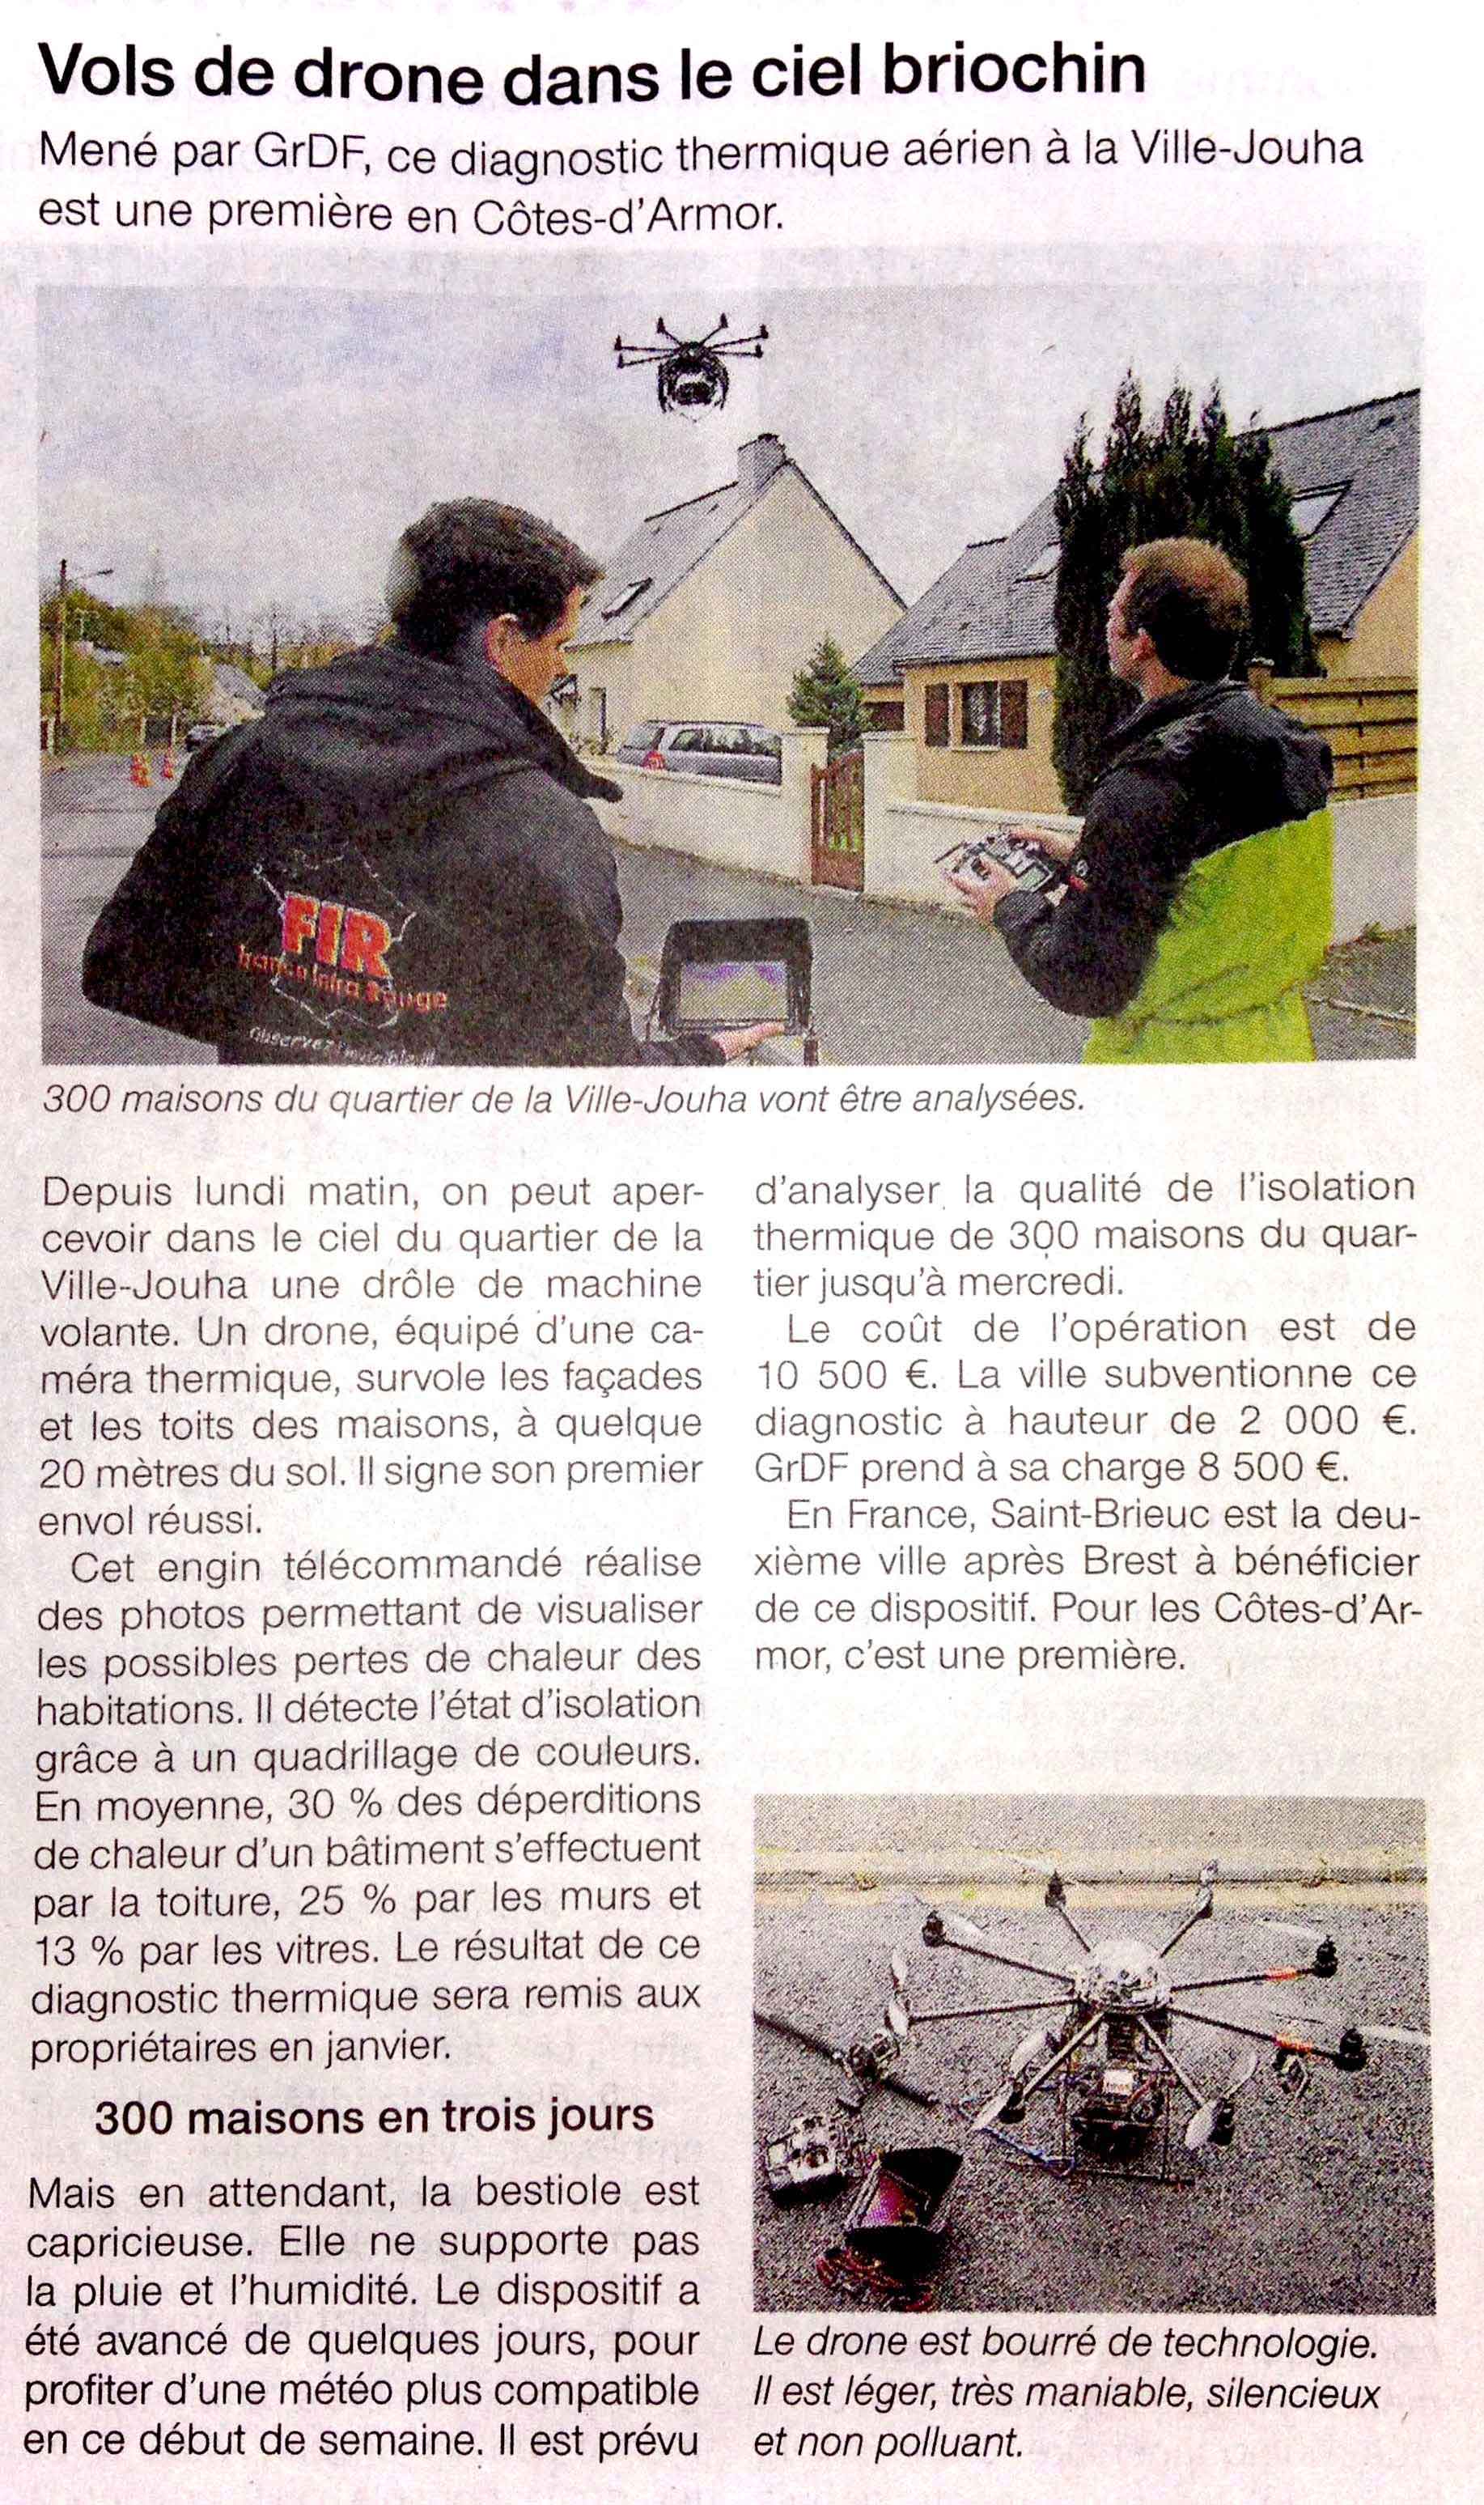 Article sur l'inspection aérinne par drone de la ville de St brieuc